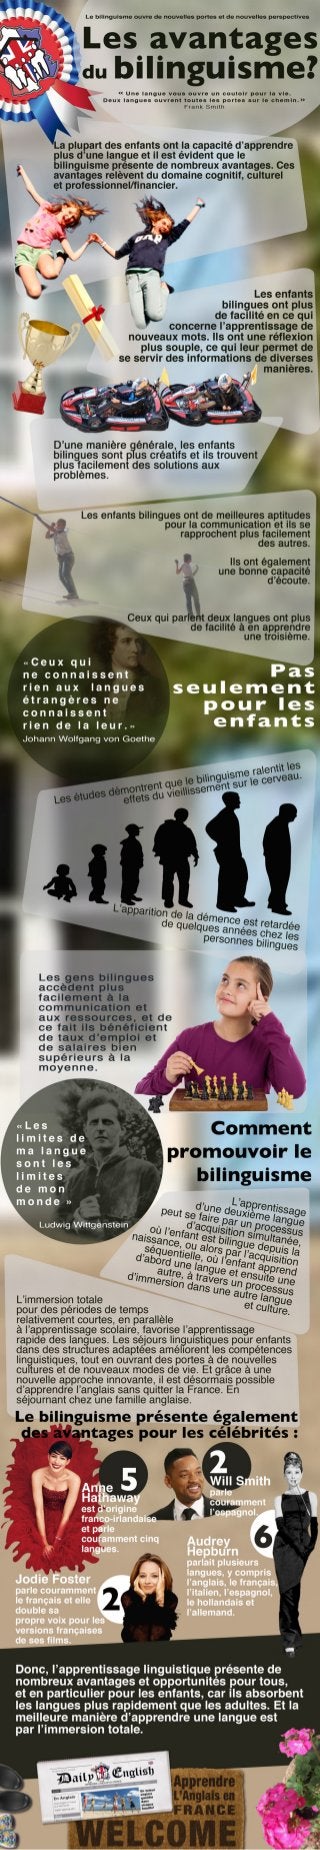 Séjours linguistiques en France par DailyEnglish